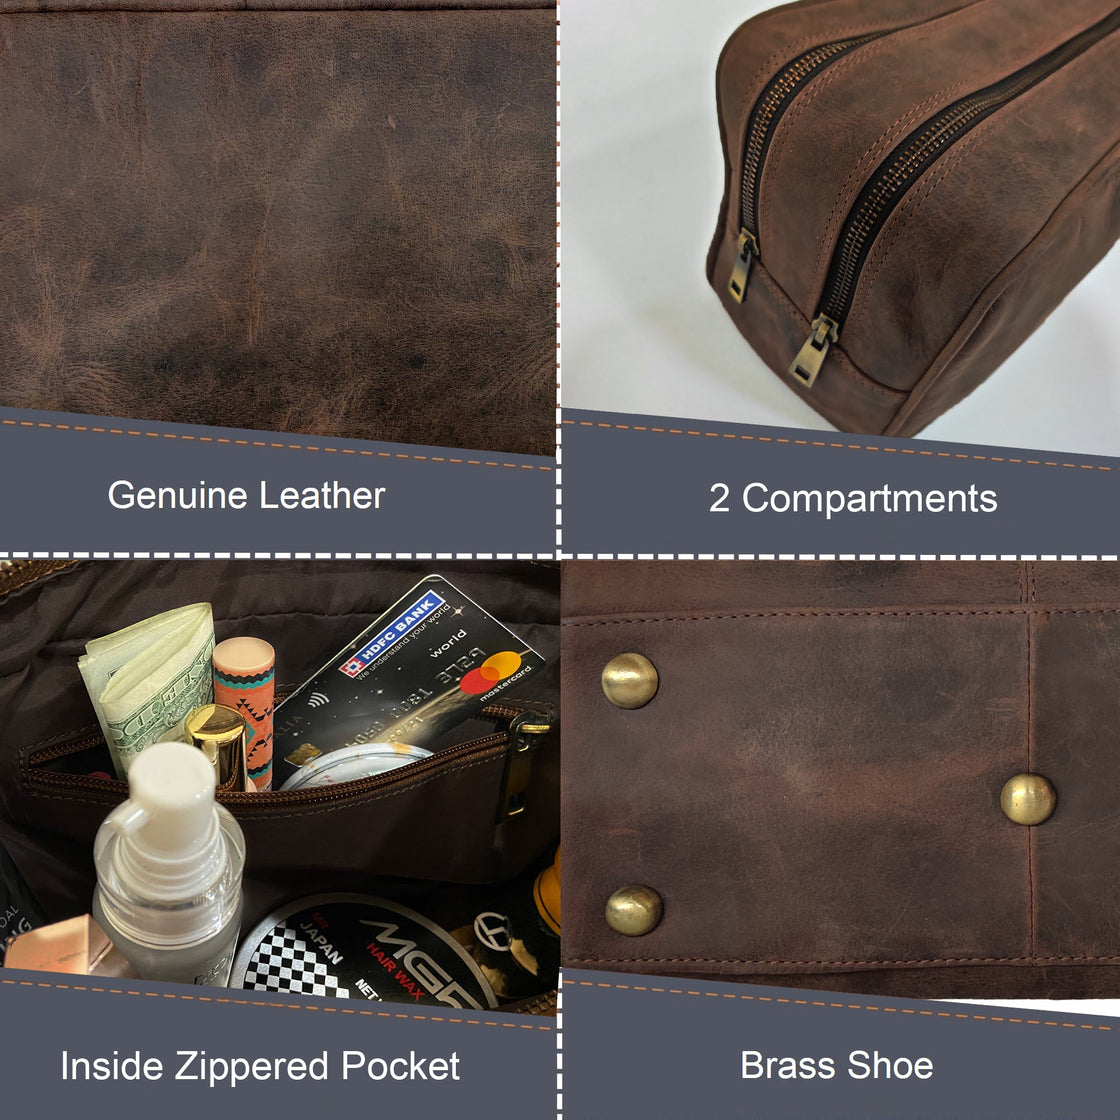 Johnny Men's Leather Travel Dopp Kit (Dark  Brown)